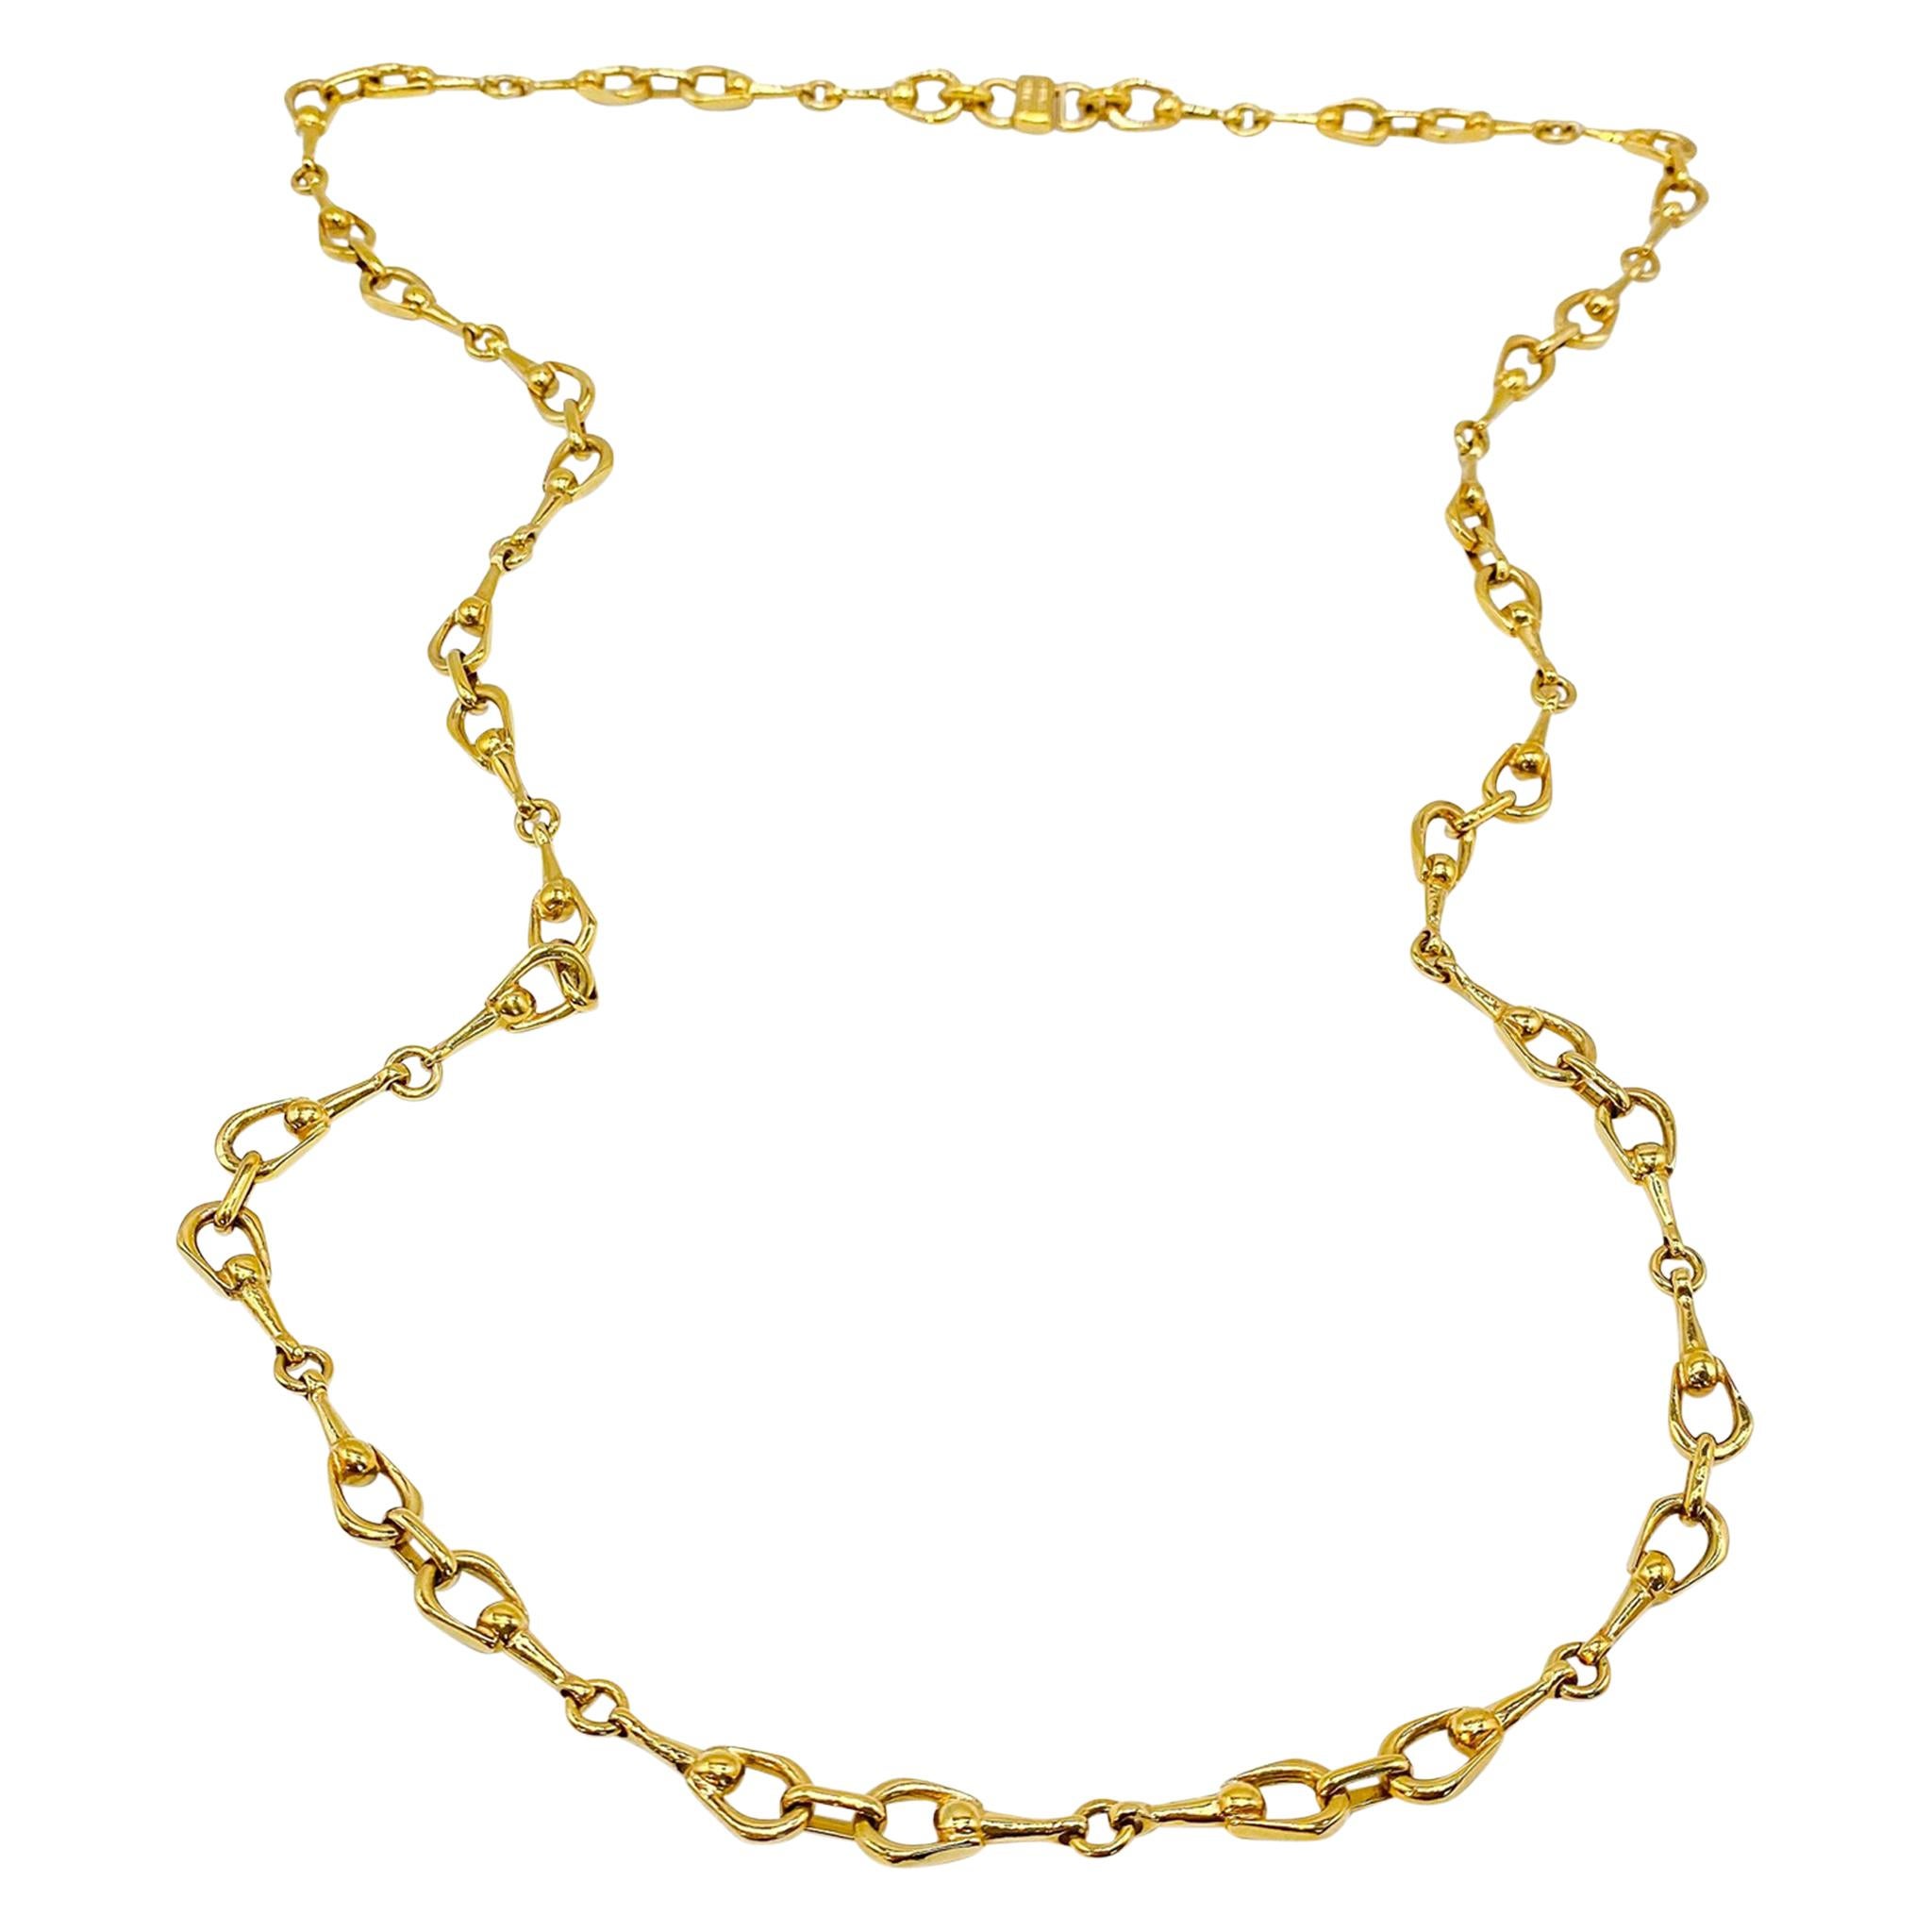 Celine Gold Plated Necklace Vintage, 1980s